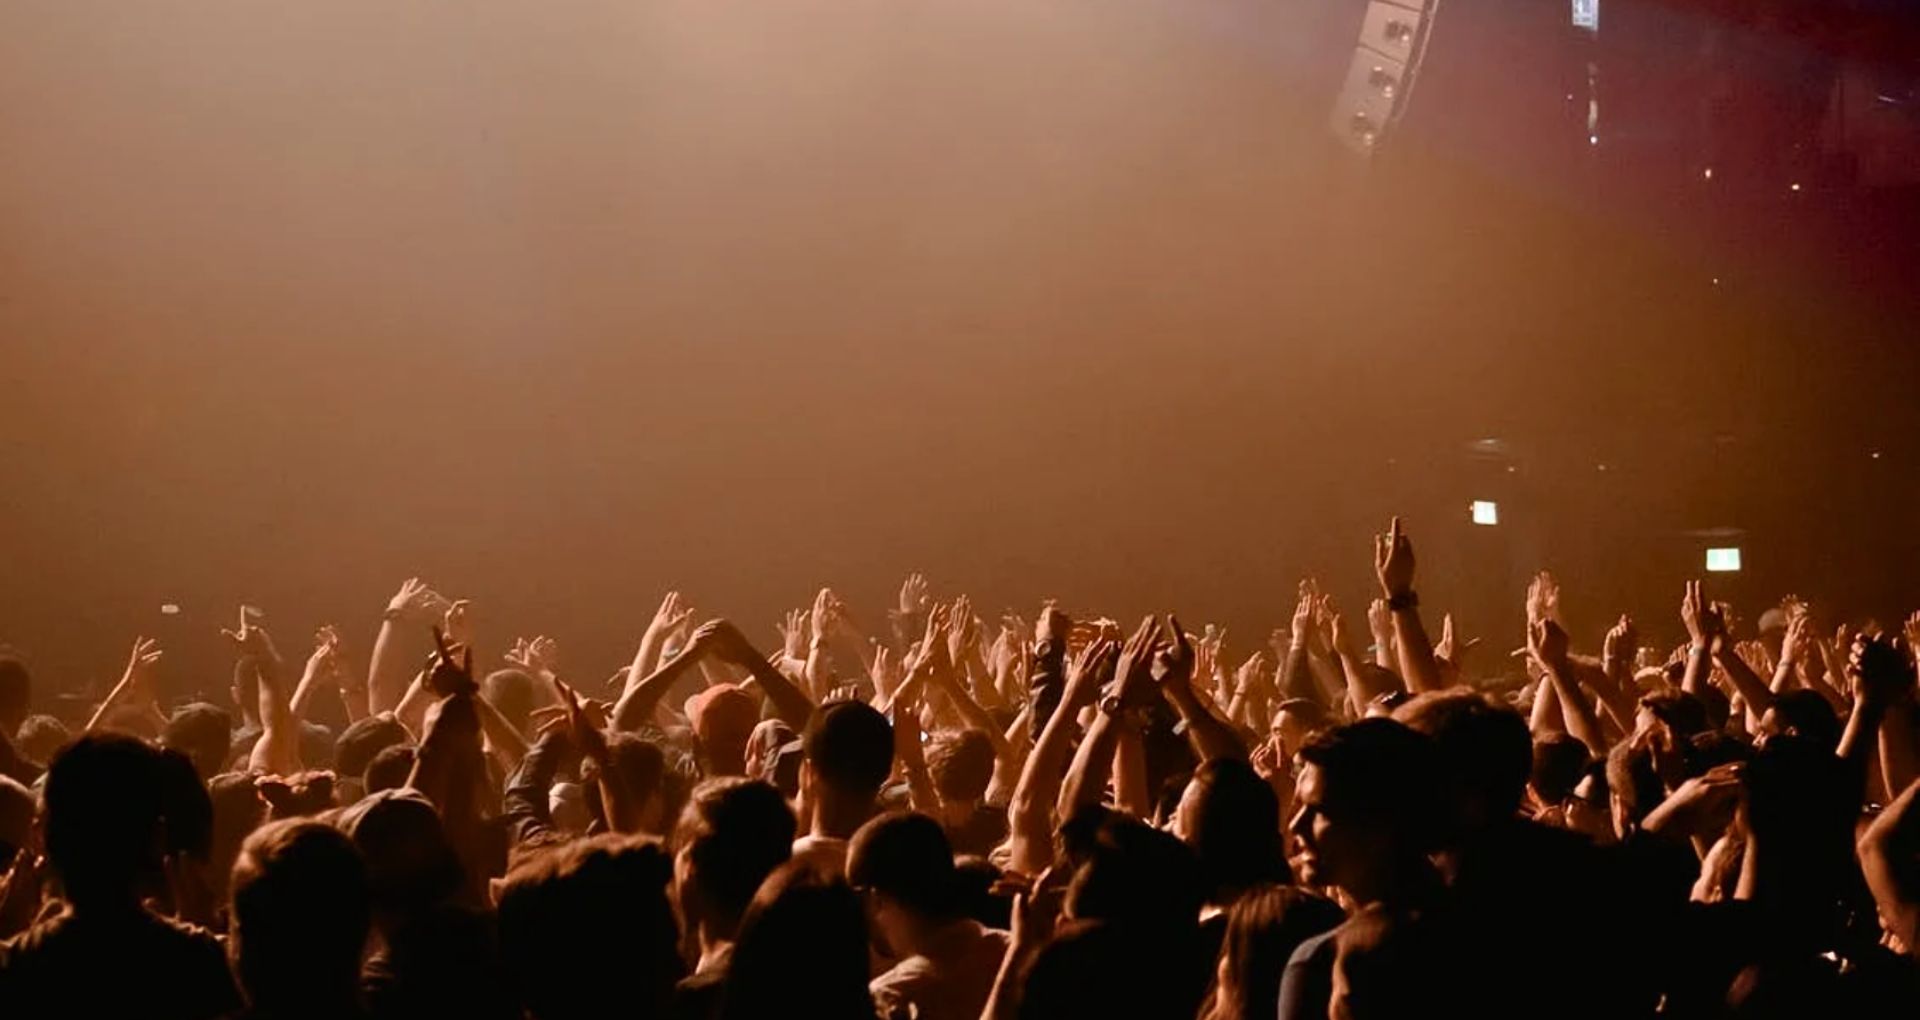 Protections auditives pour concerts et festivals